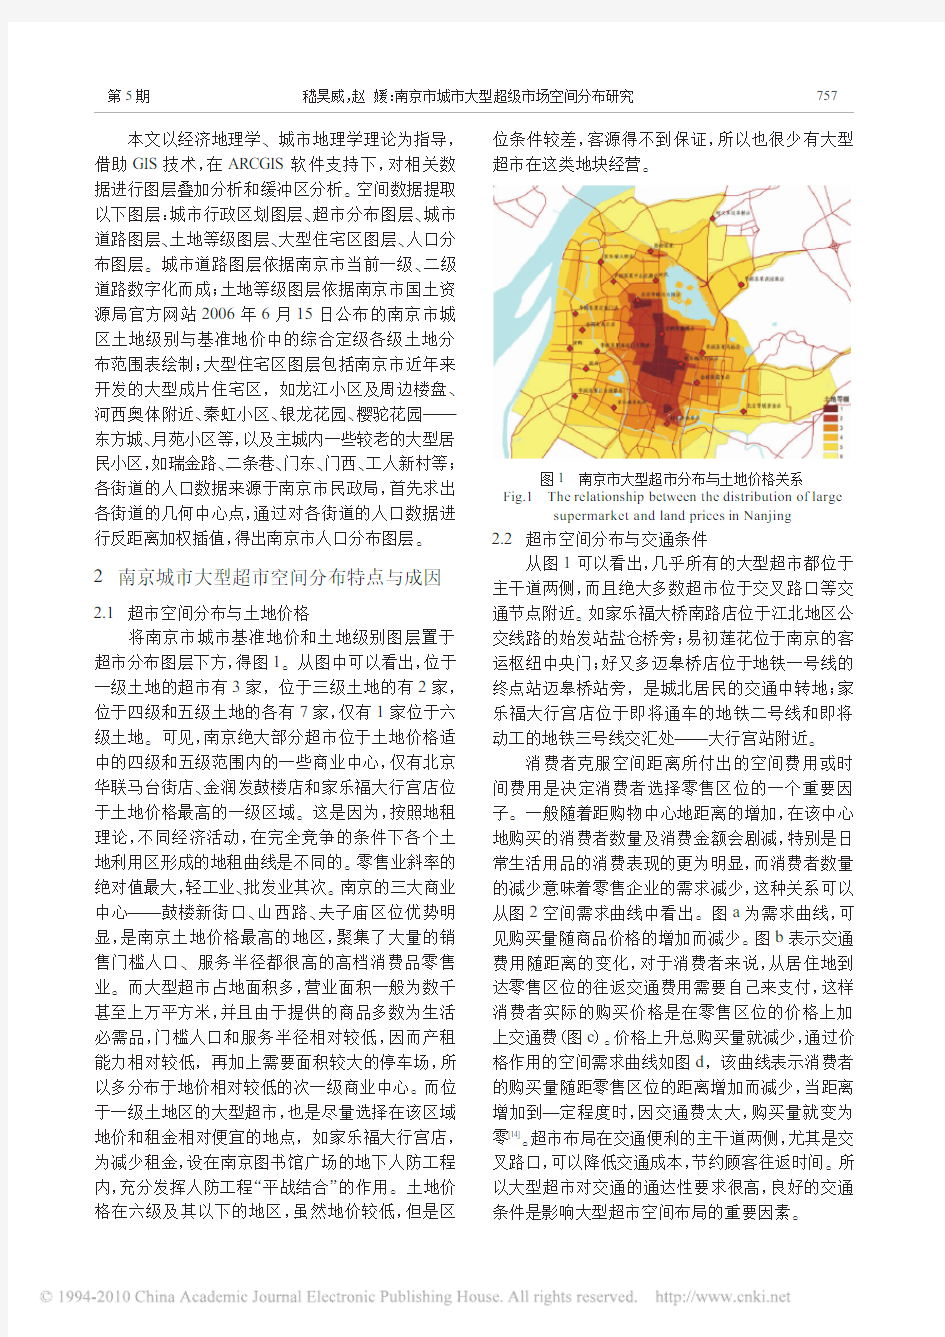 南京市城市大型超级市场空间分布研究